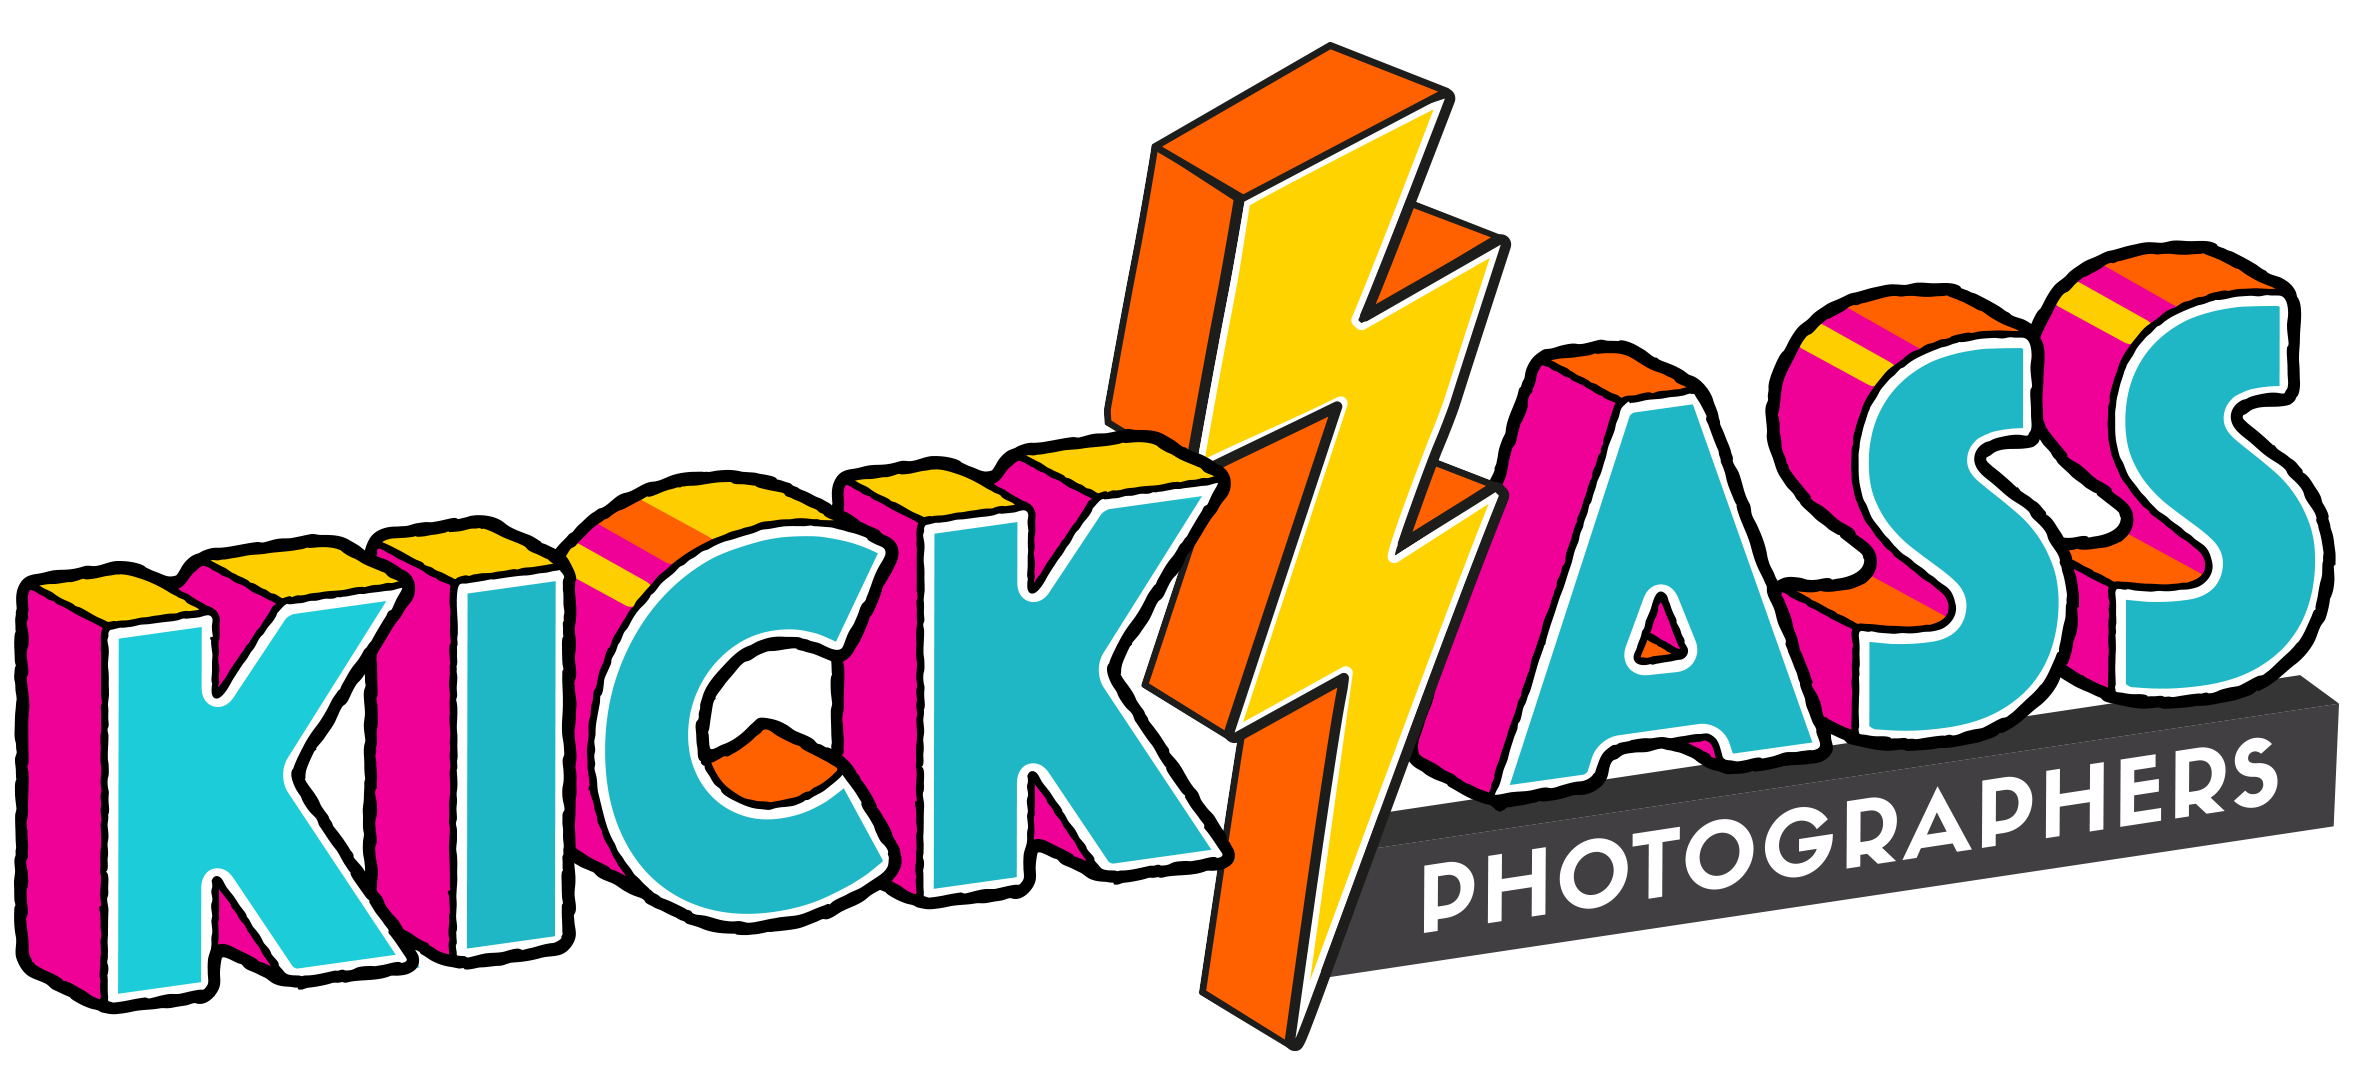 Kick Ass Photographers Coupons and Promo Code